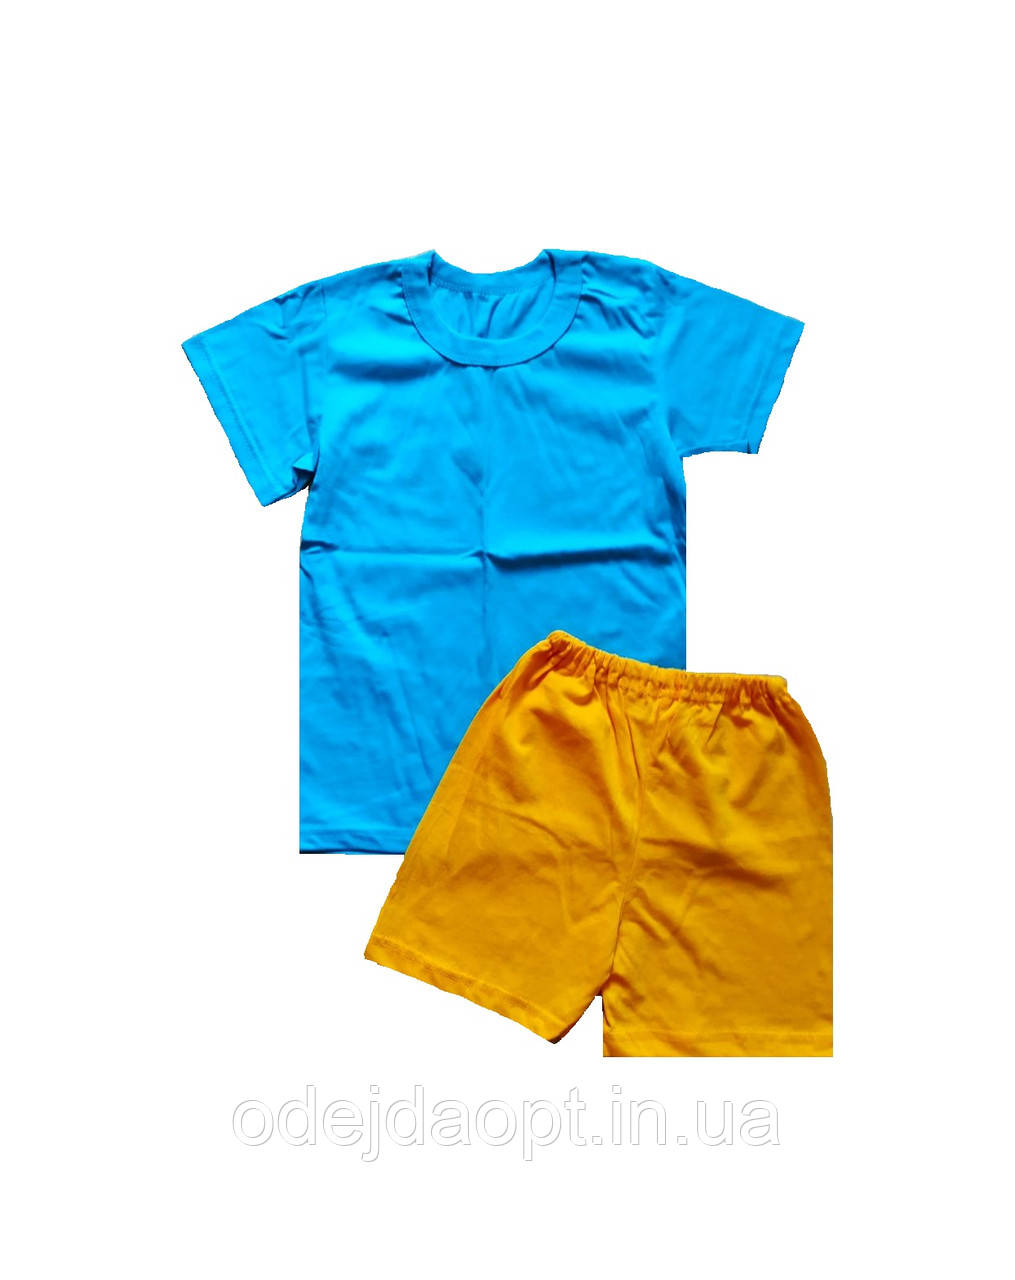 Дитячий комплект для фізкультури футболка та шорти, фото 1